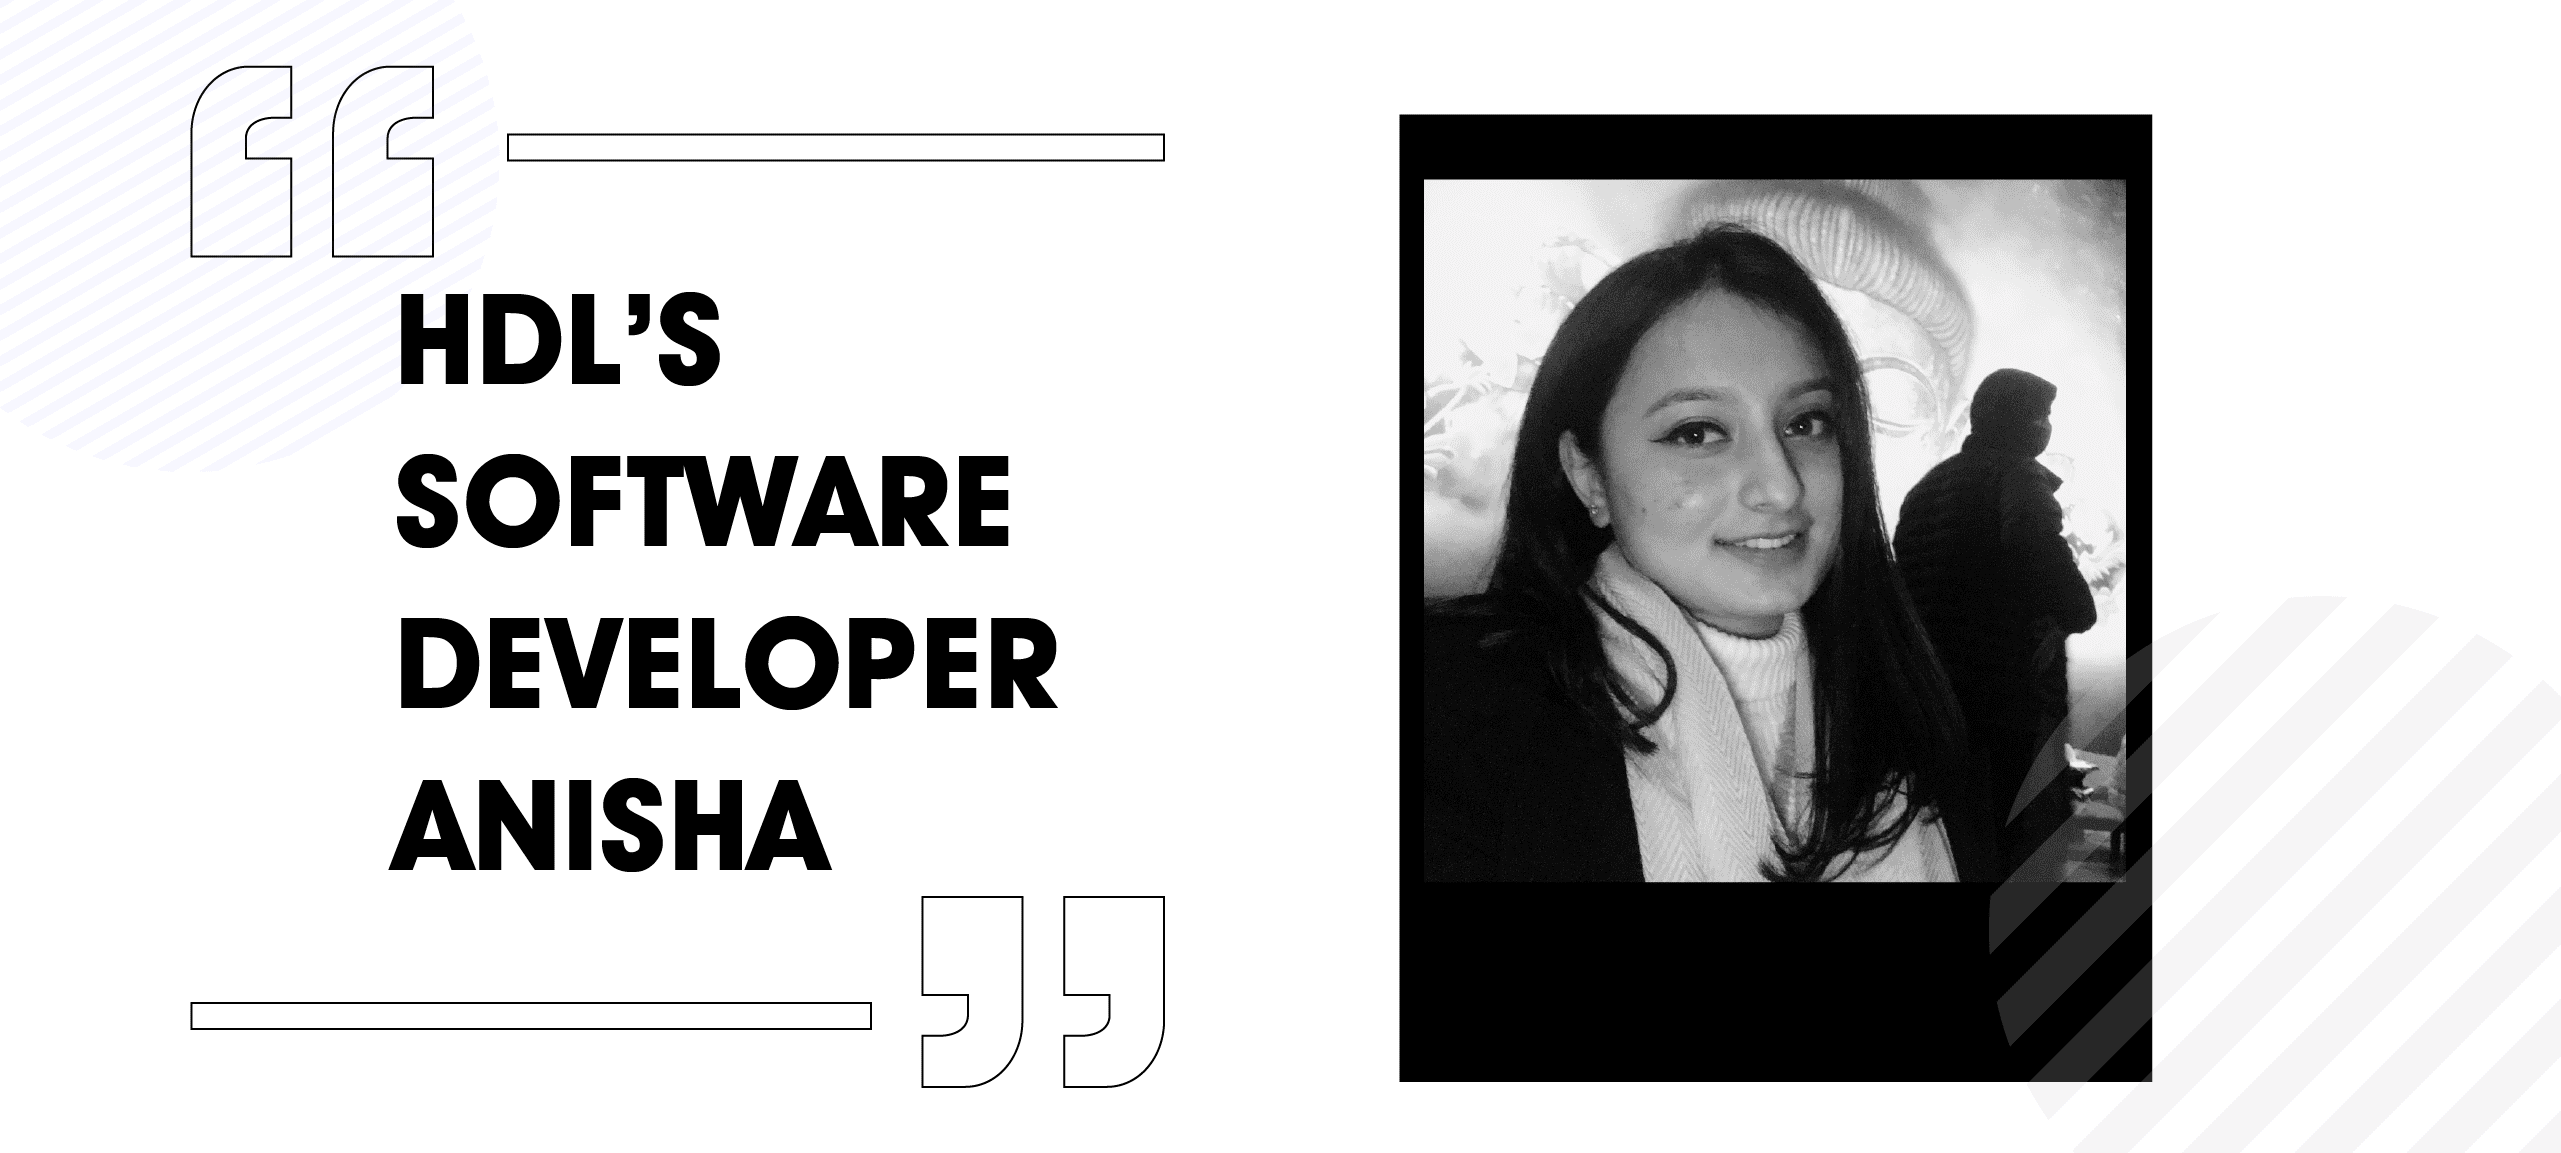 HDL's Software Developer